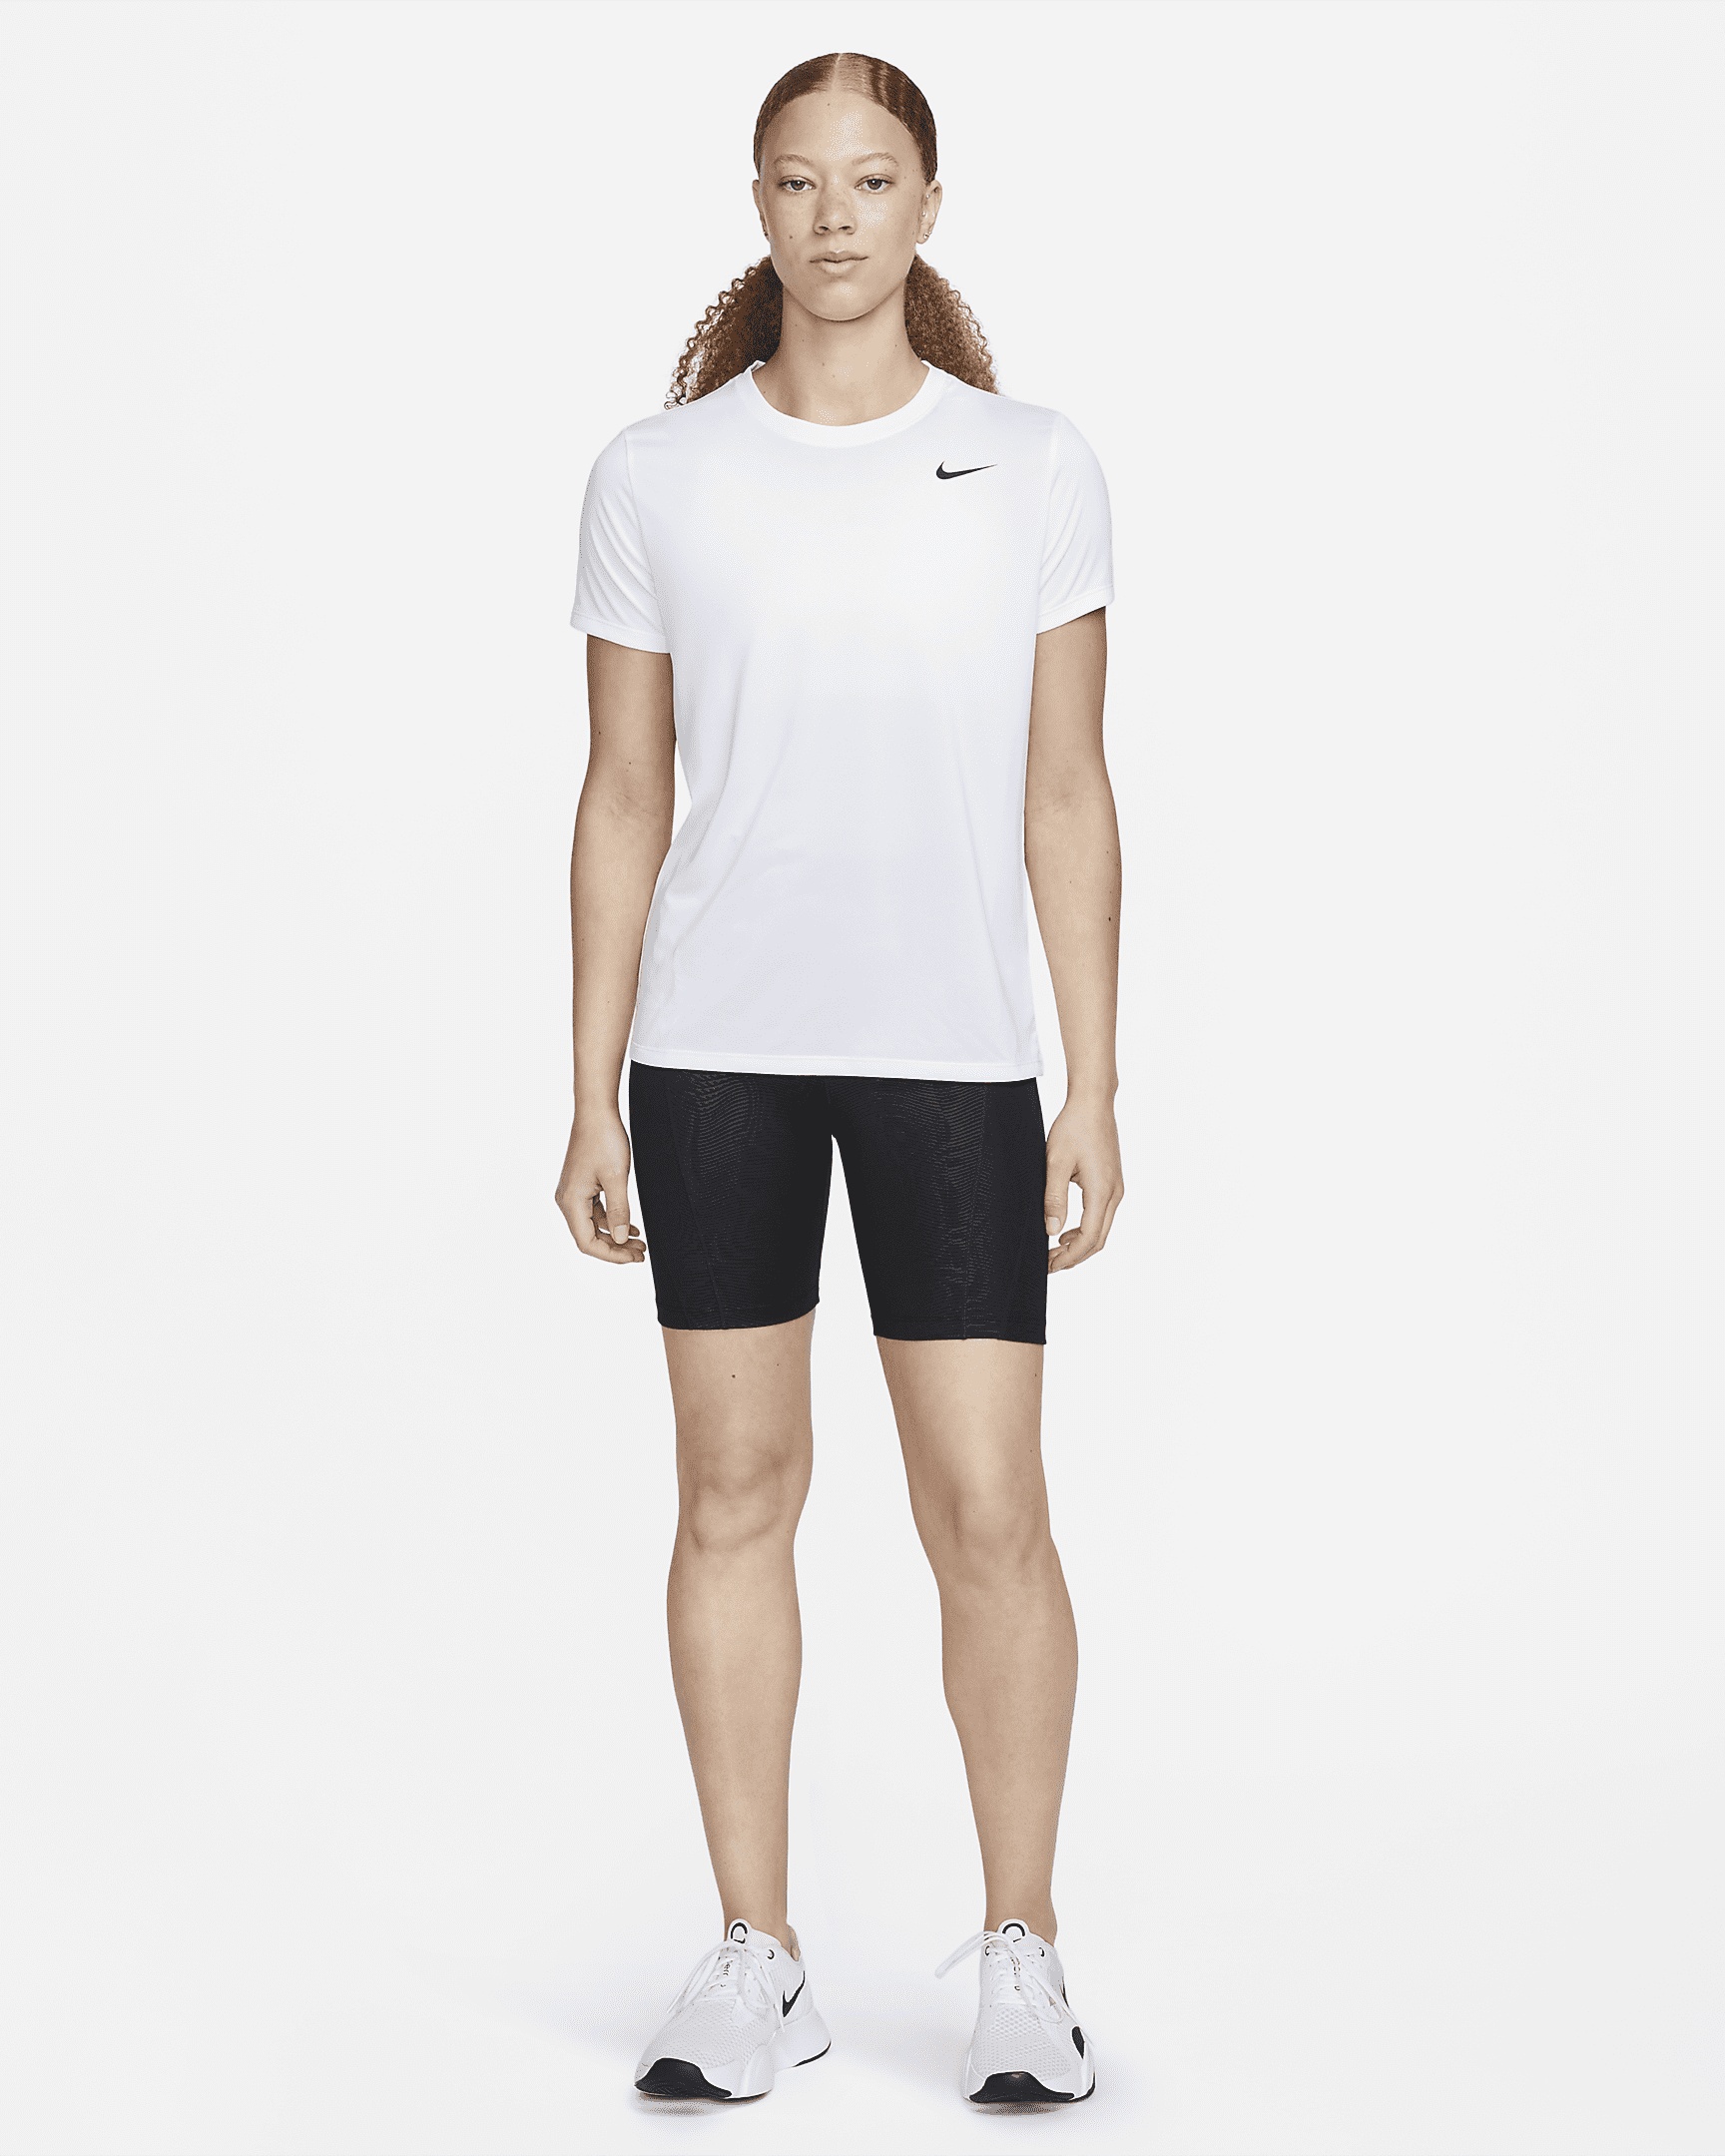 Nike Women's Dri-FIT T-Shirt - 4